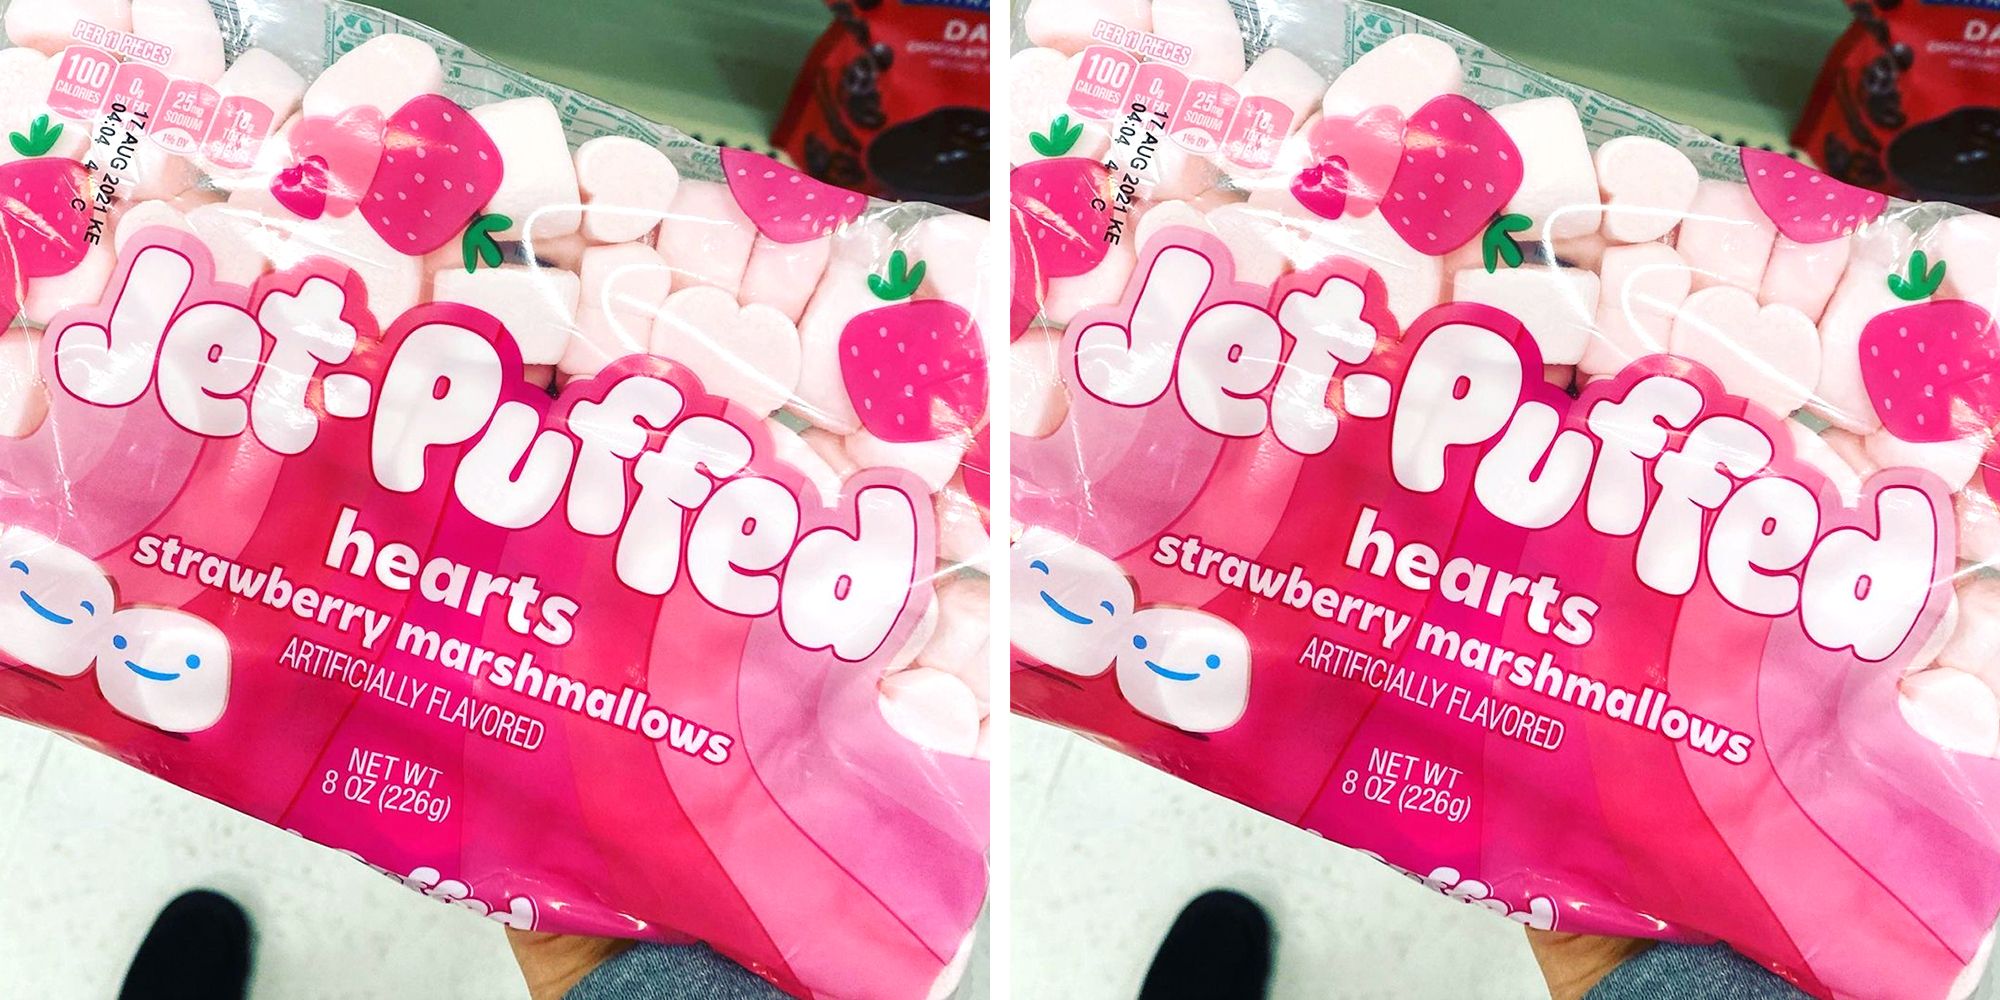 Kraft Jet-Puffed HeartMallows Just $1.99 at Target